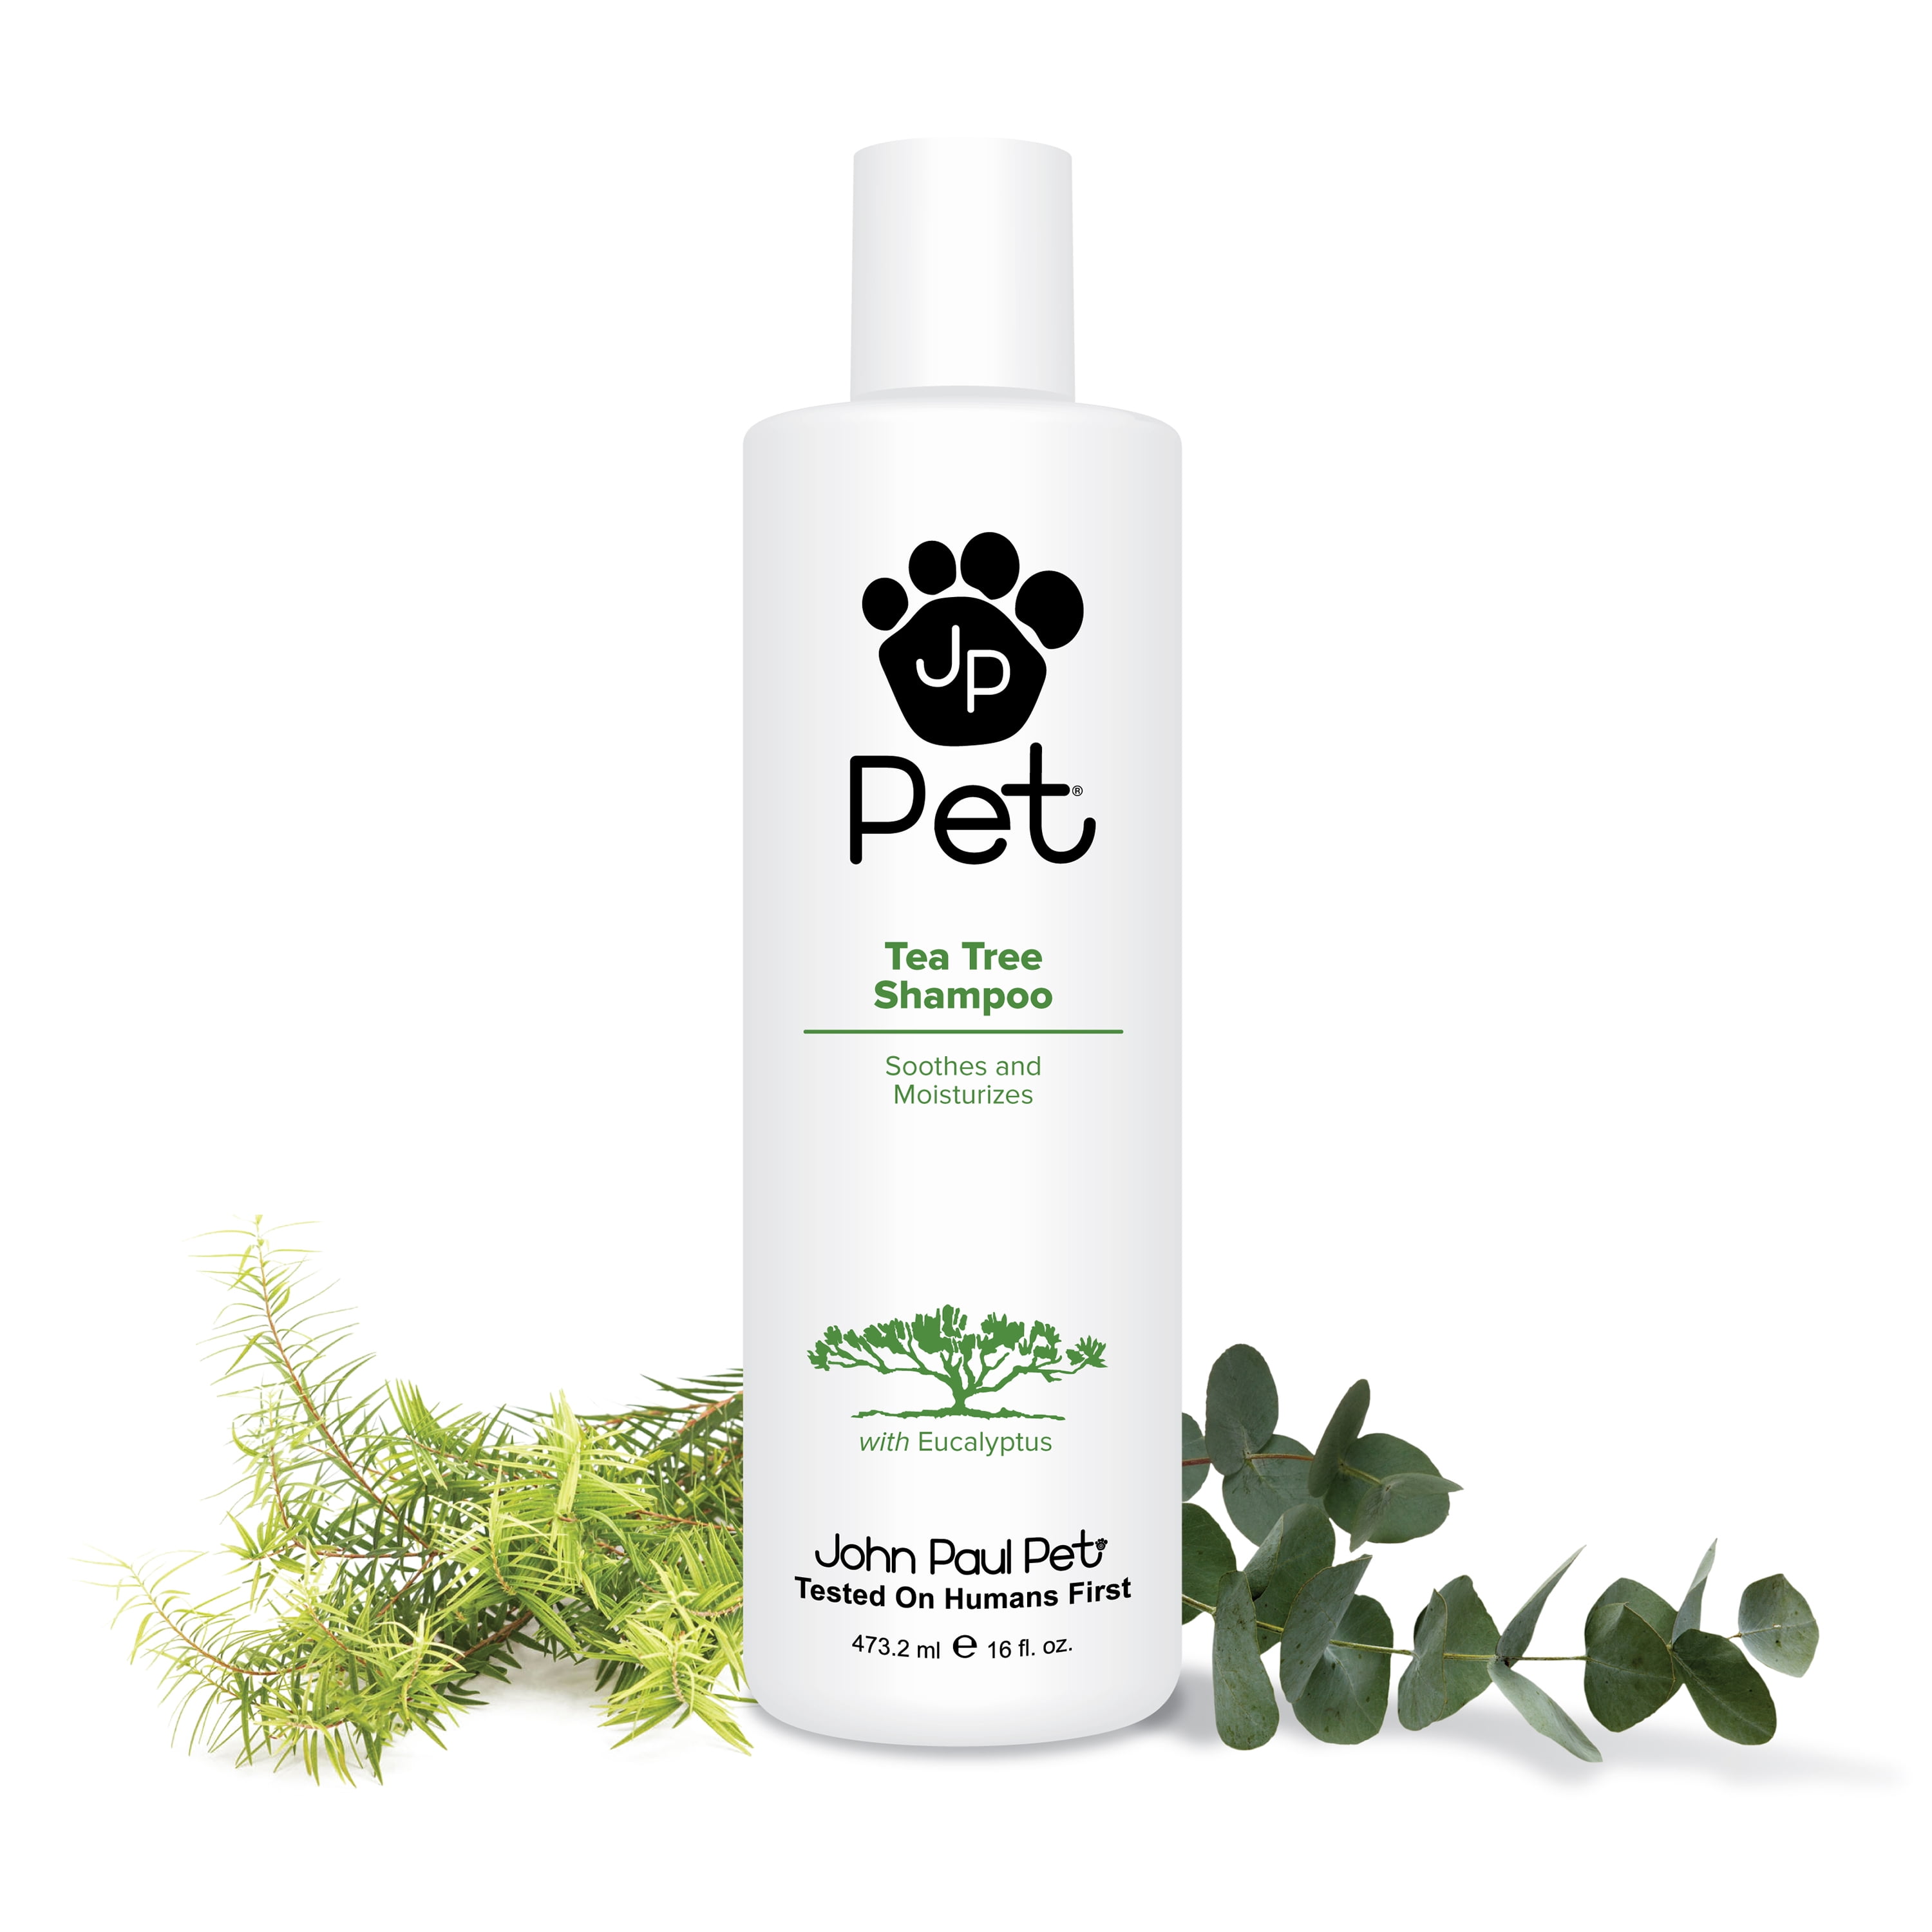 can i use tea tree oil shampoo on my dog